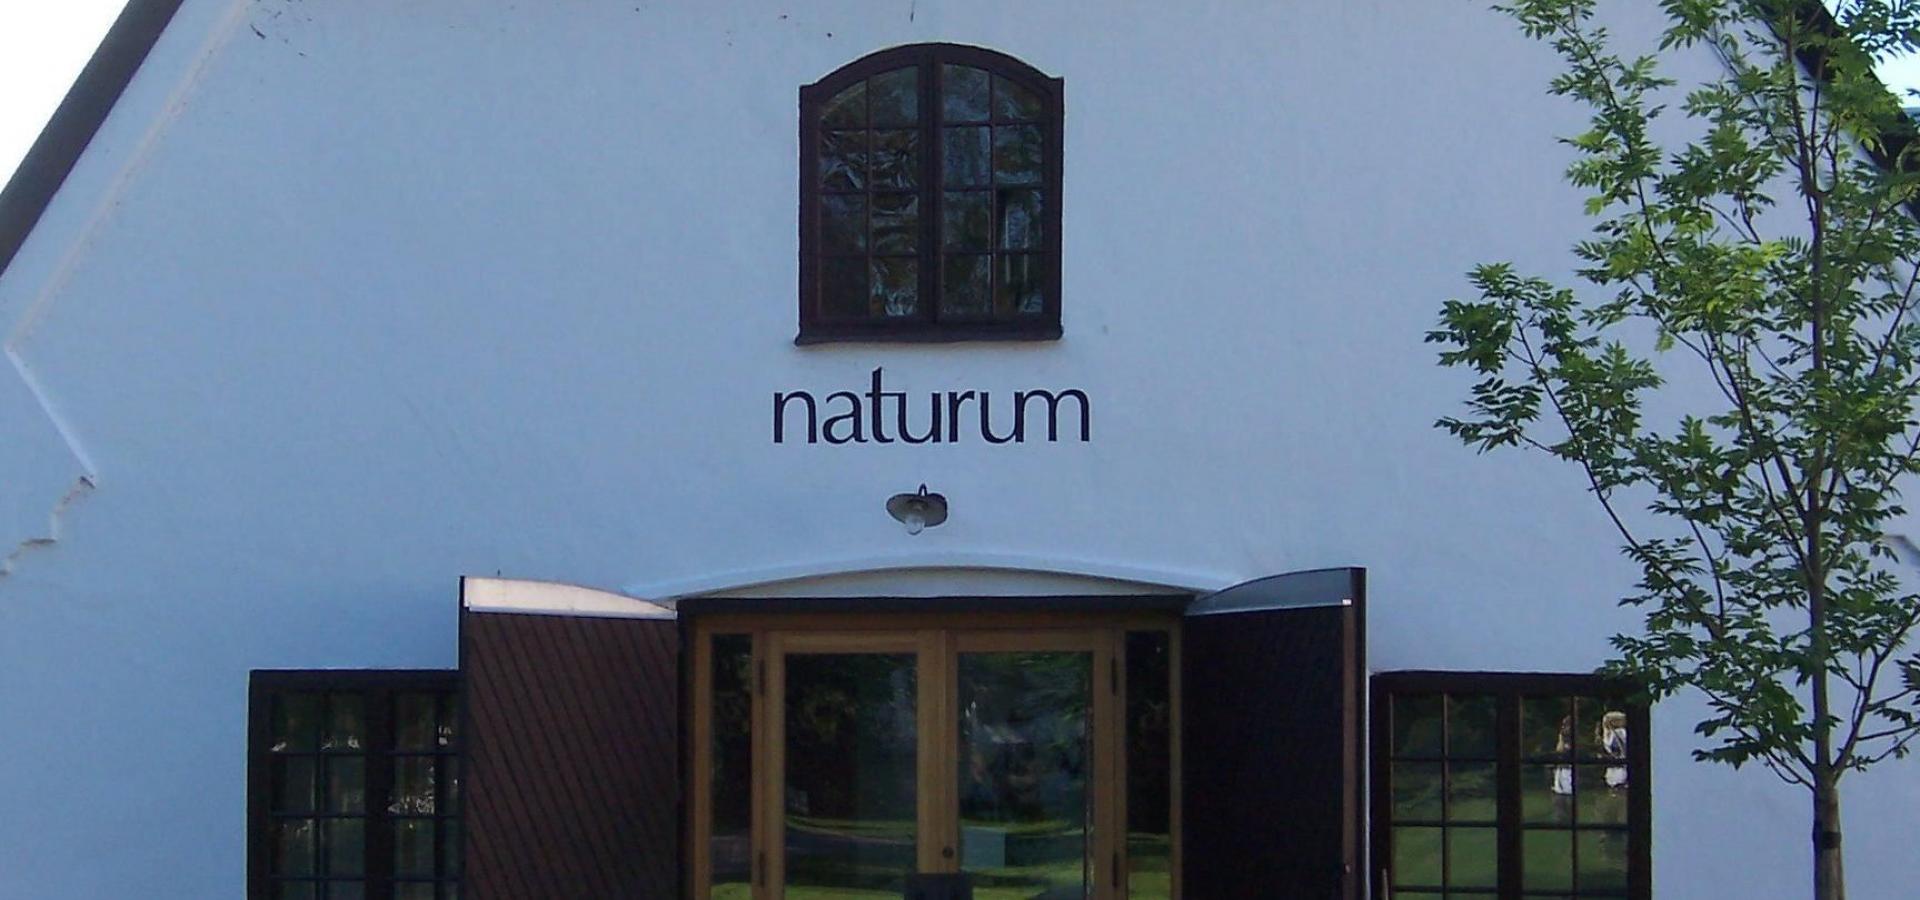 Entrén Naturum.JPG